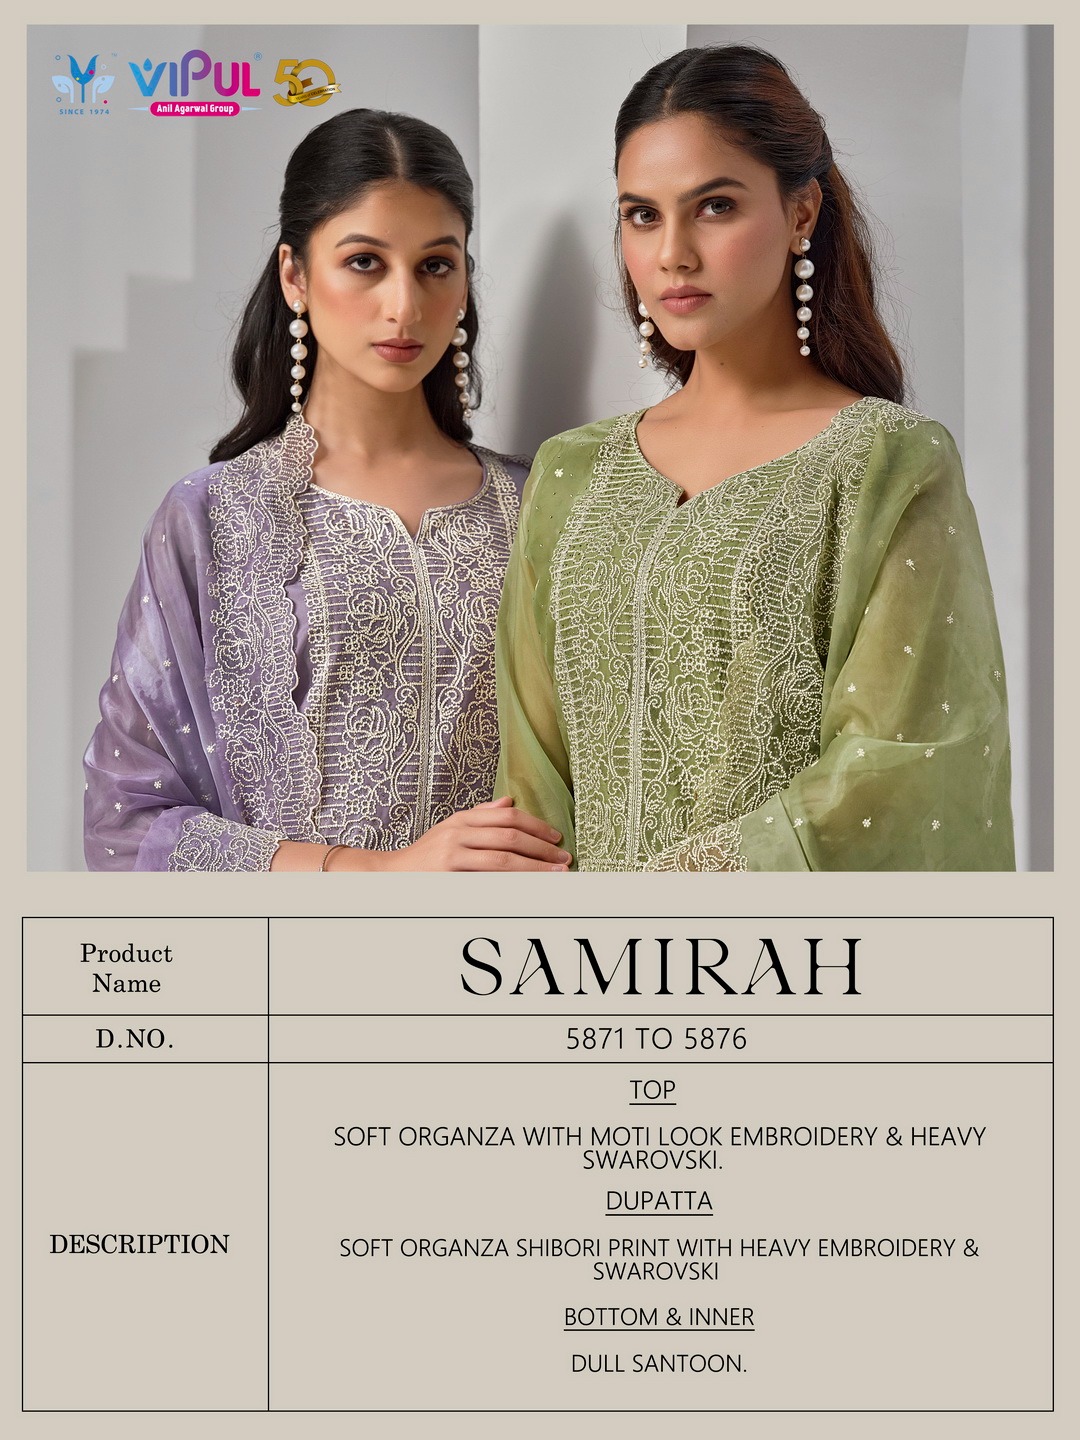 Vipul Samirah collection 6